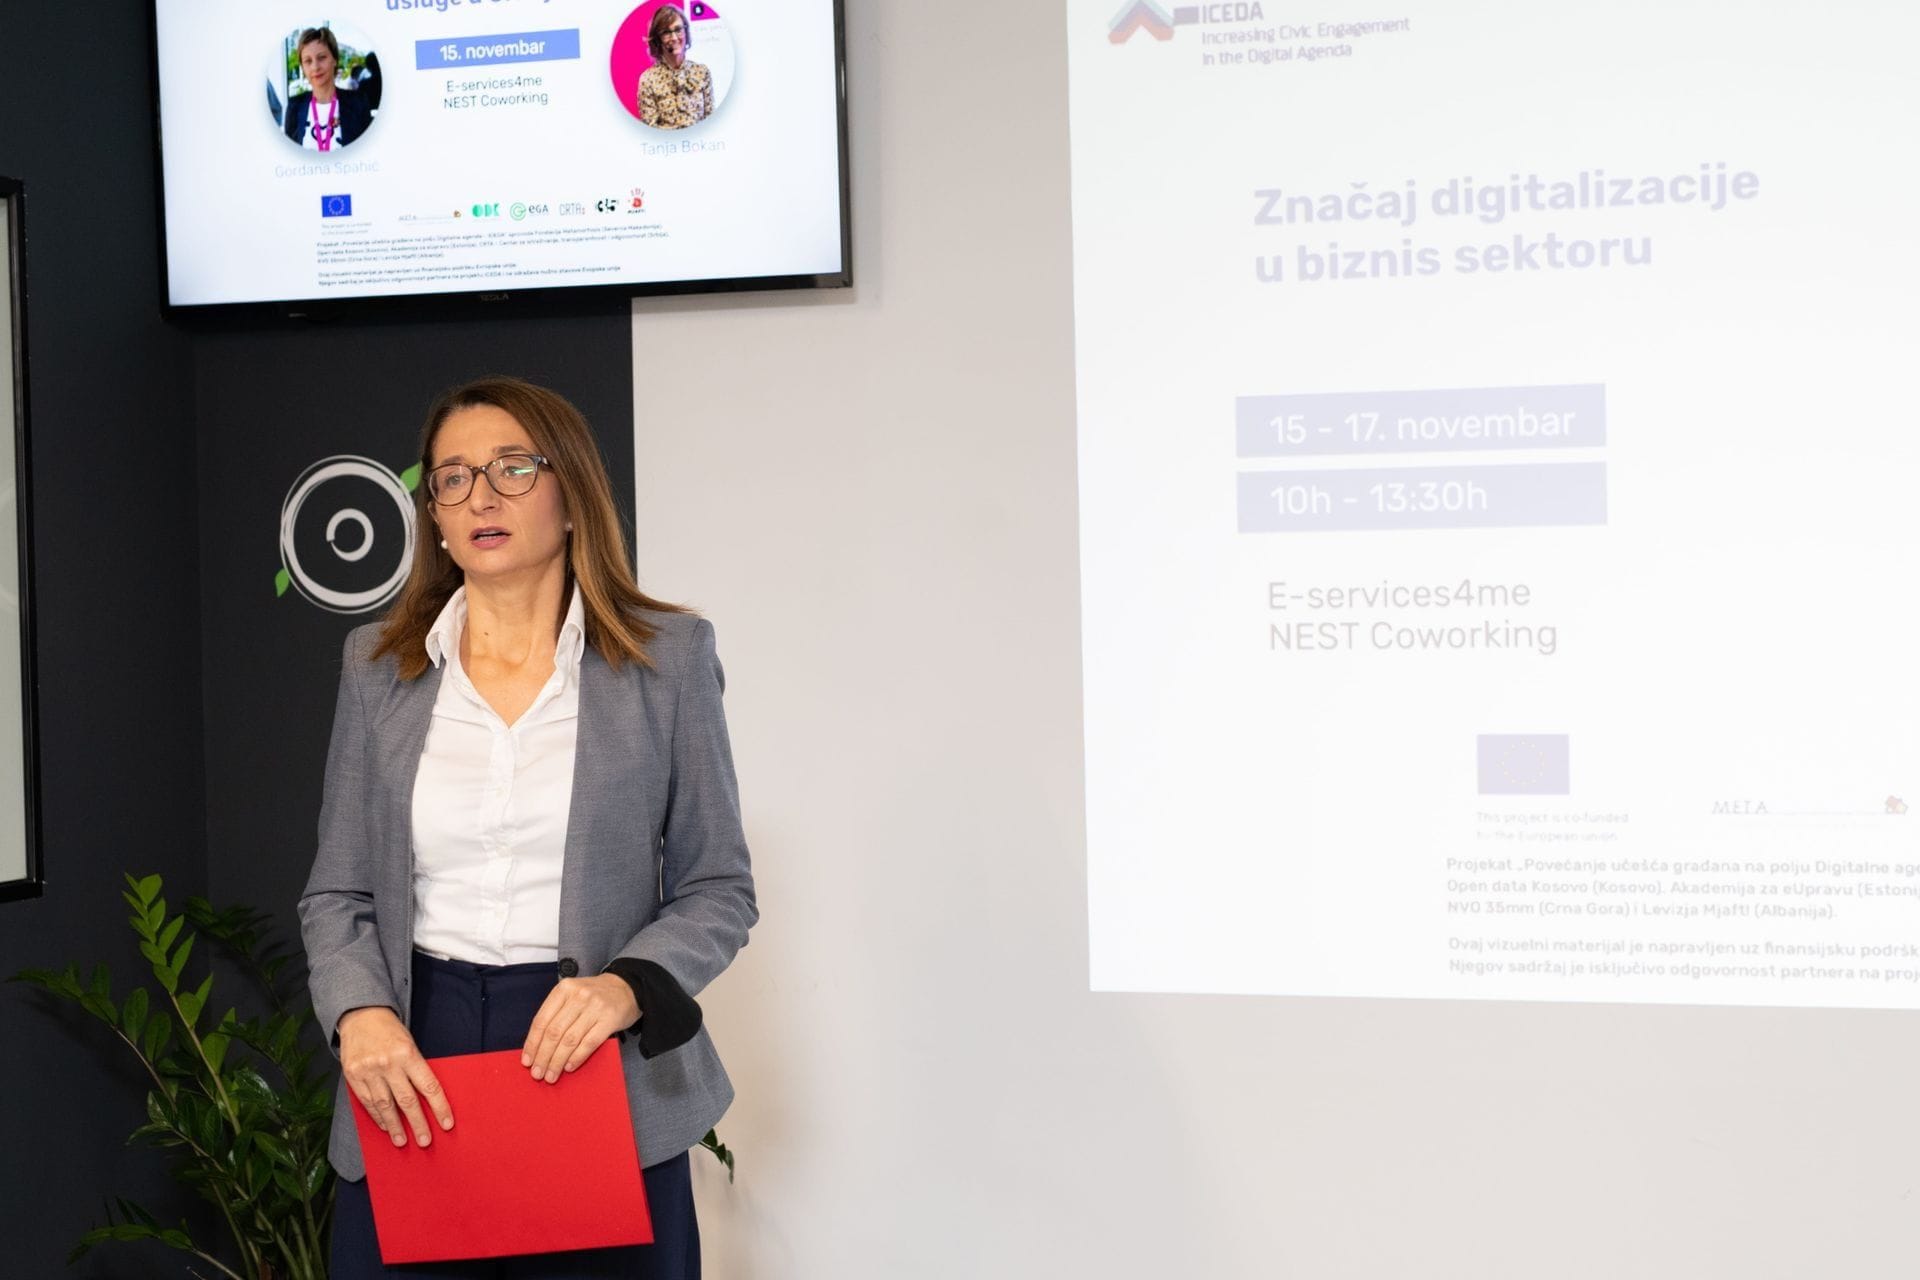 Drzavna sekretarka Marina Banovic- ''Značaj digitalizacije u biznis sektoru'